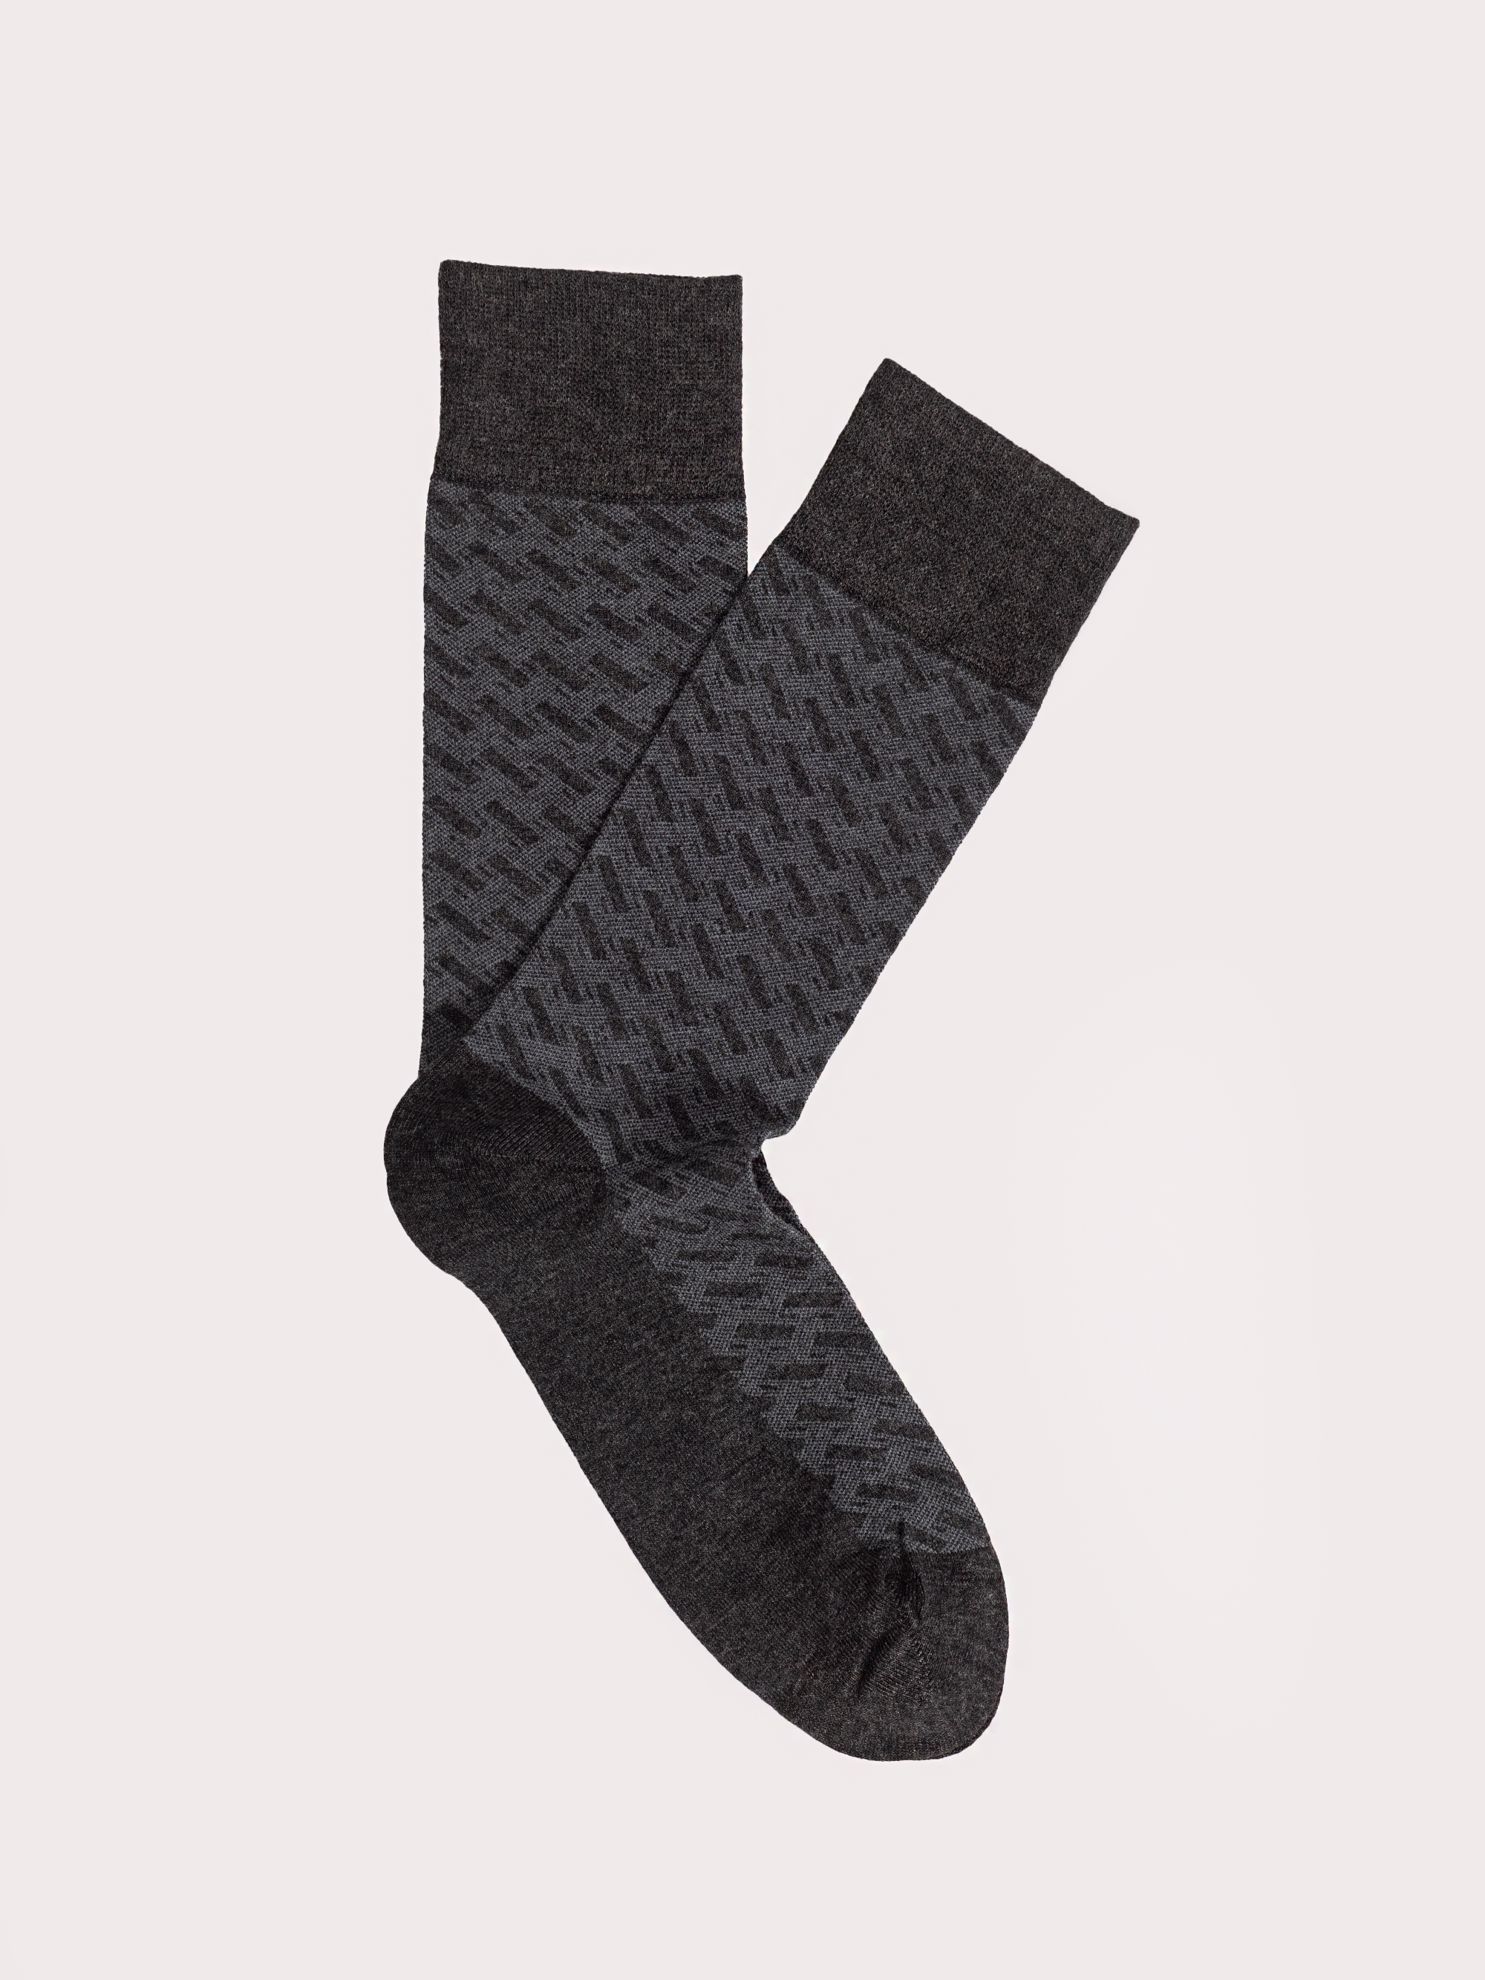 Karaca Erkek Soket Çorap-Antrasit. ürün görseli